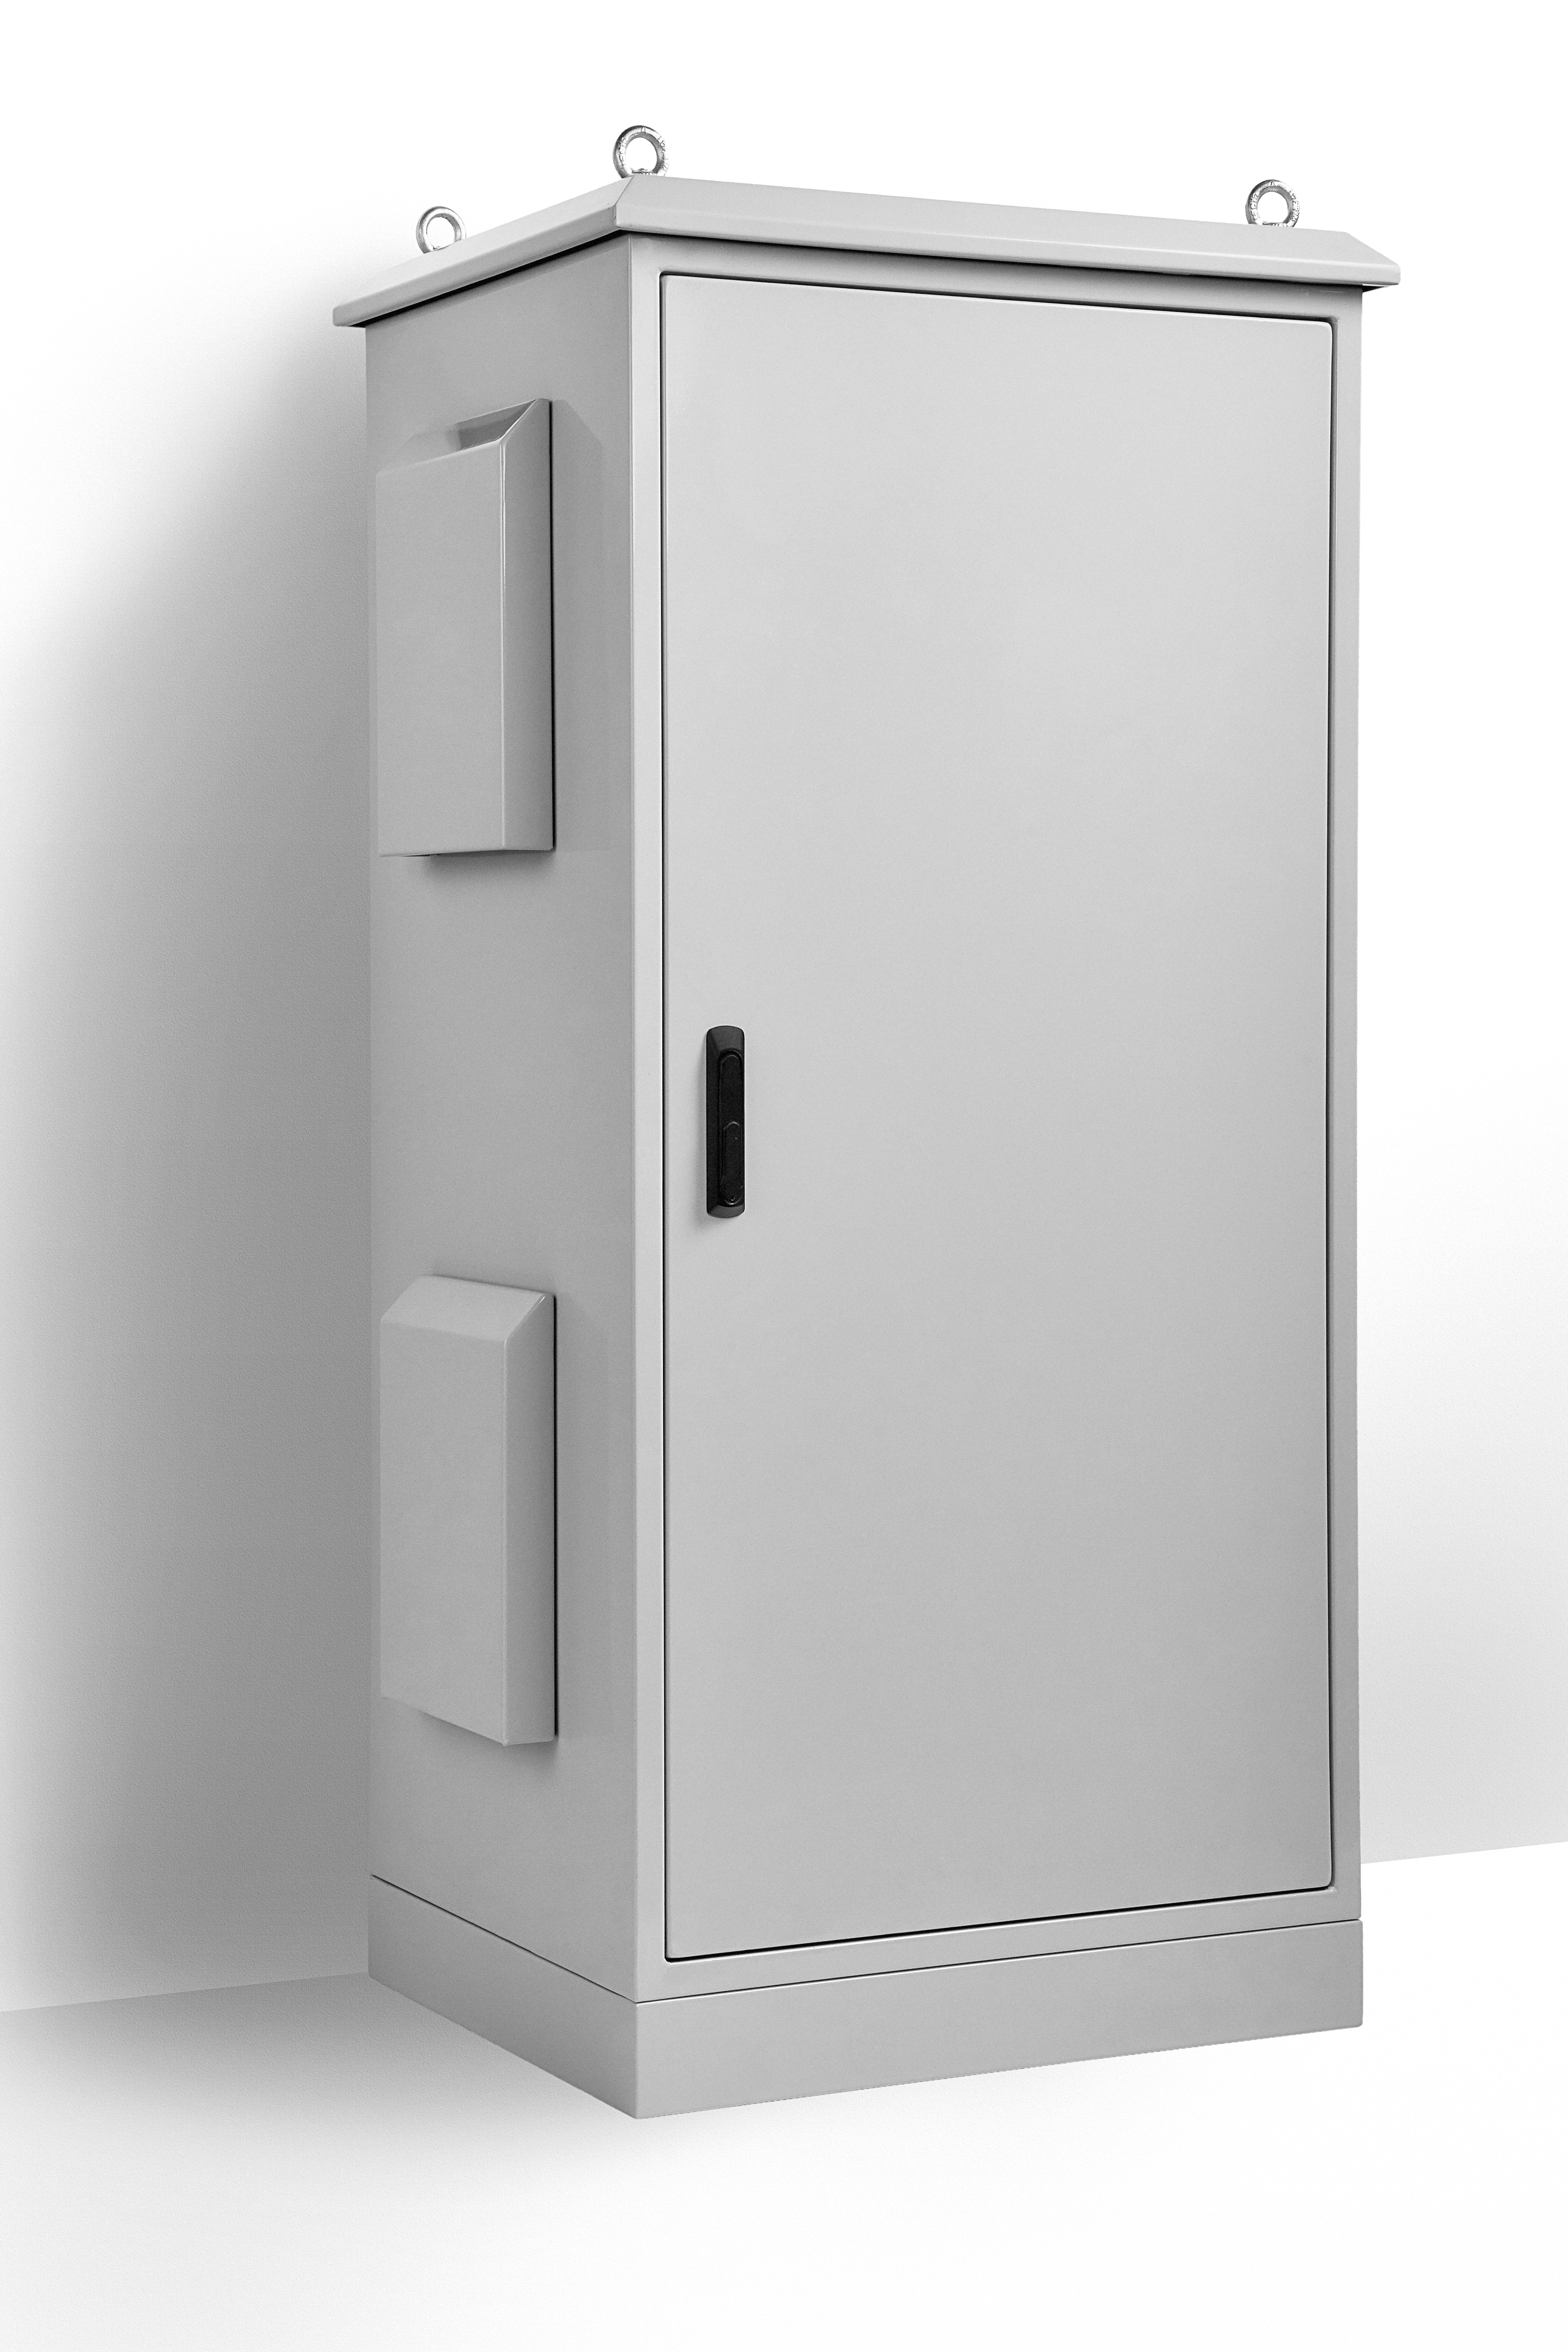 IP Enclosures - Aluminium Field Cabinet